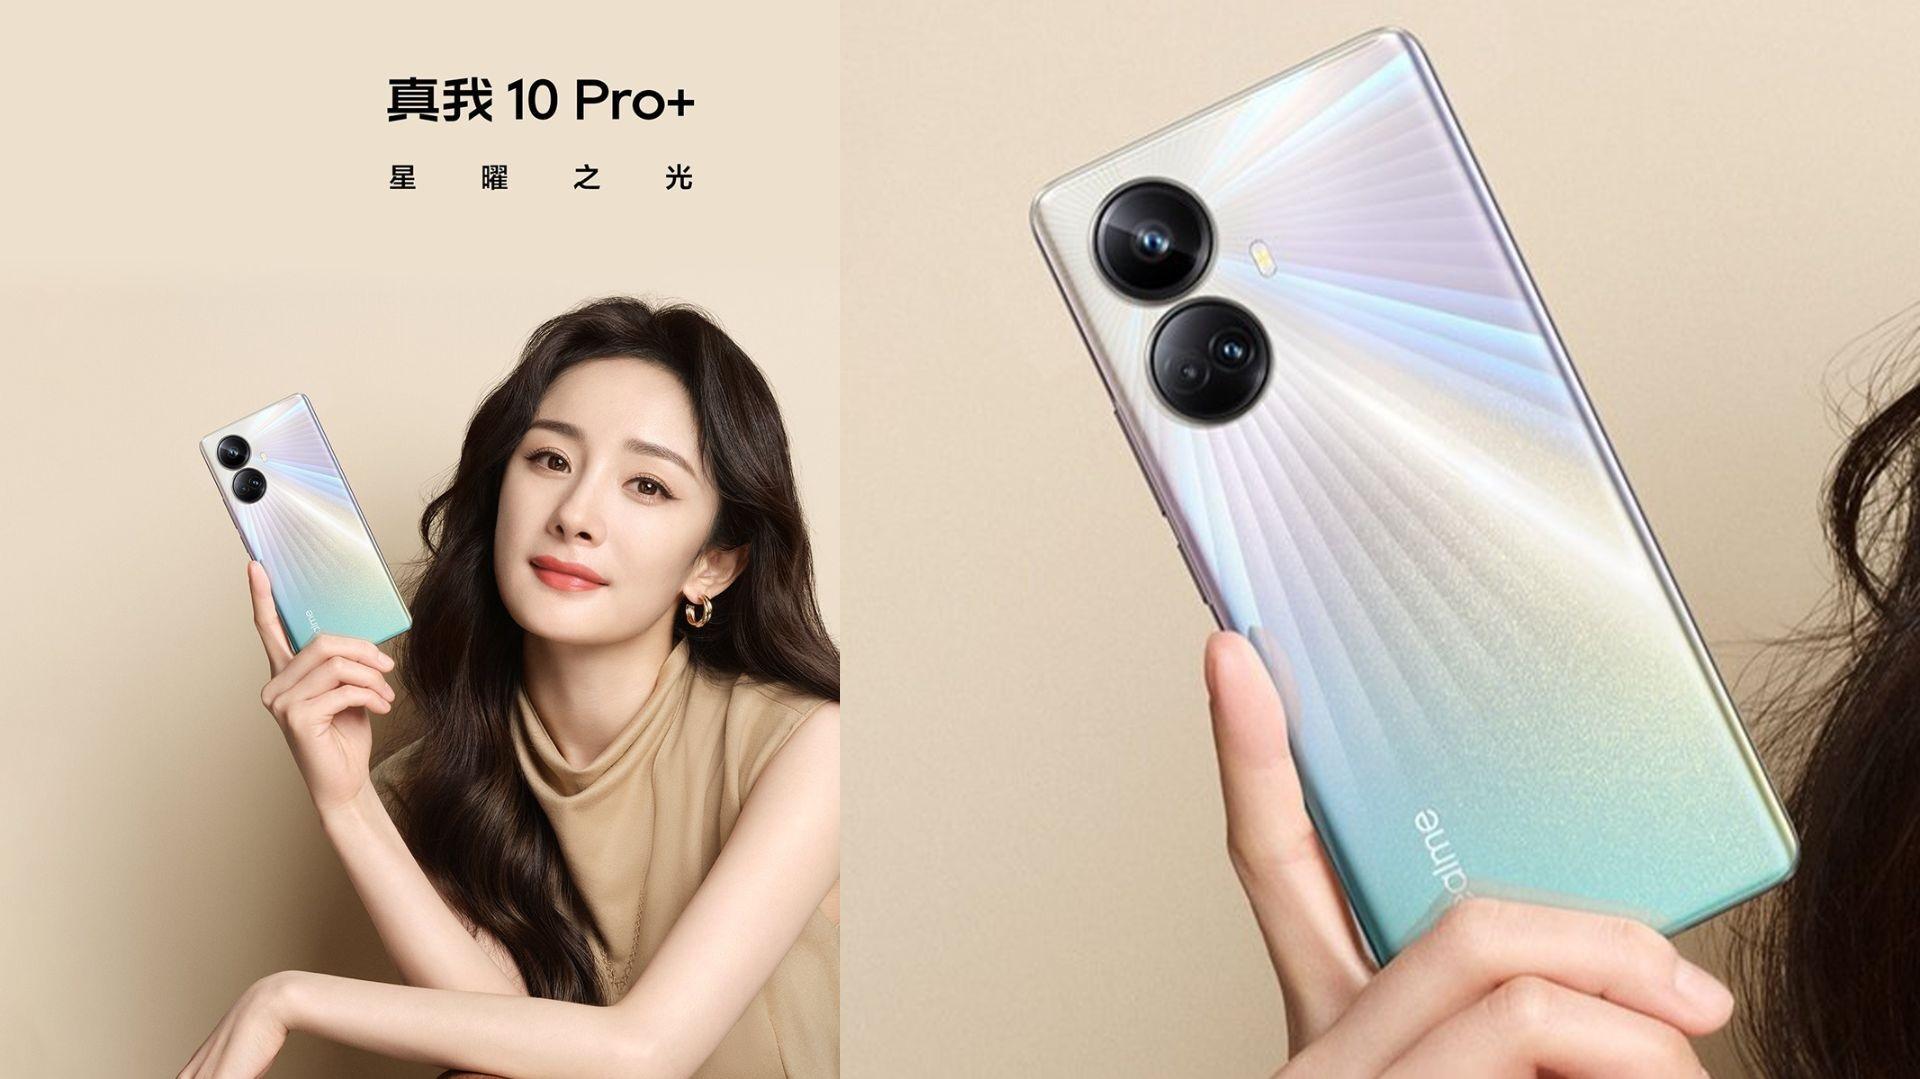 Realme Pro promo video showcases the design Smartprix